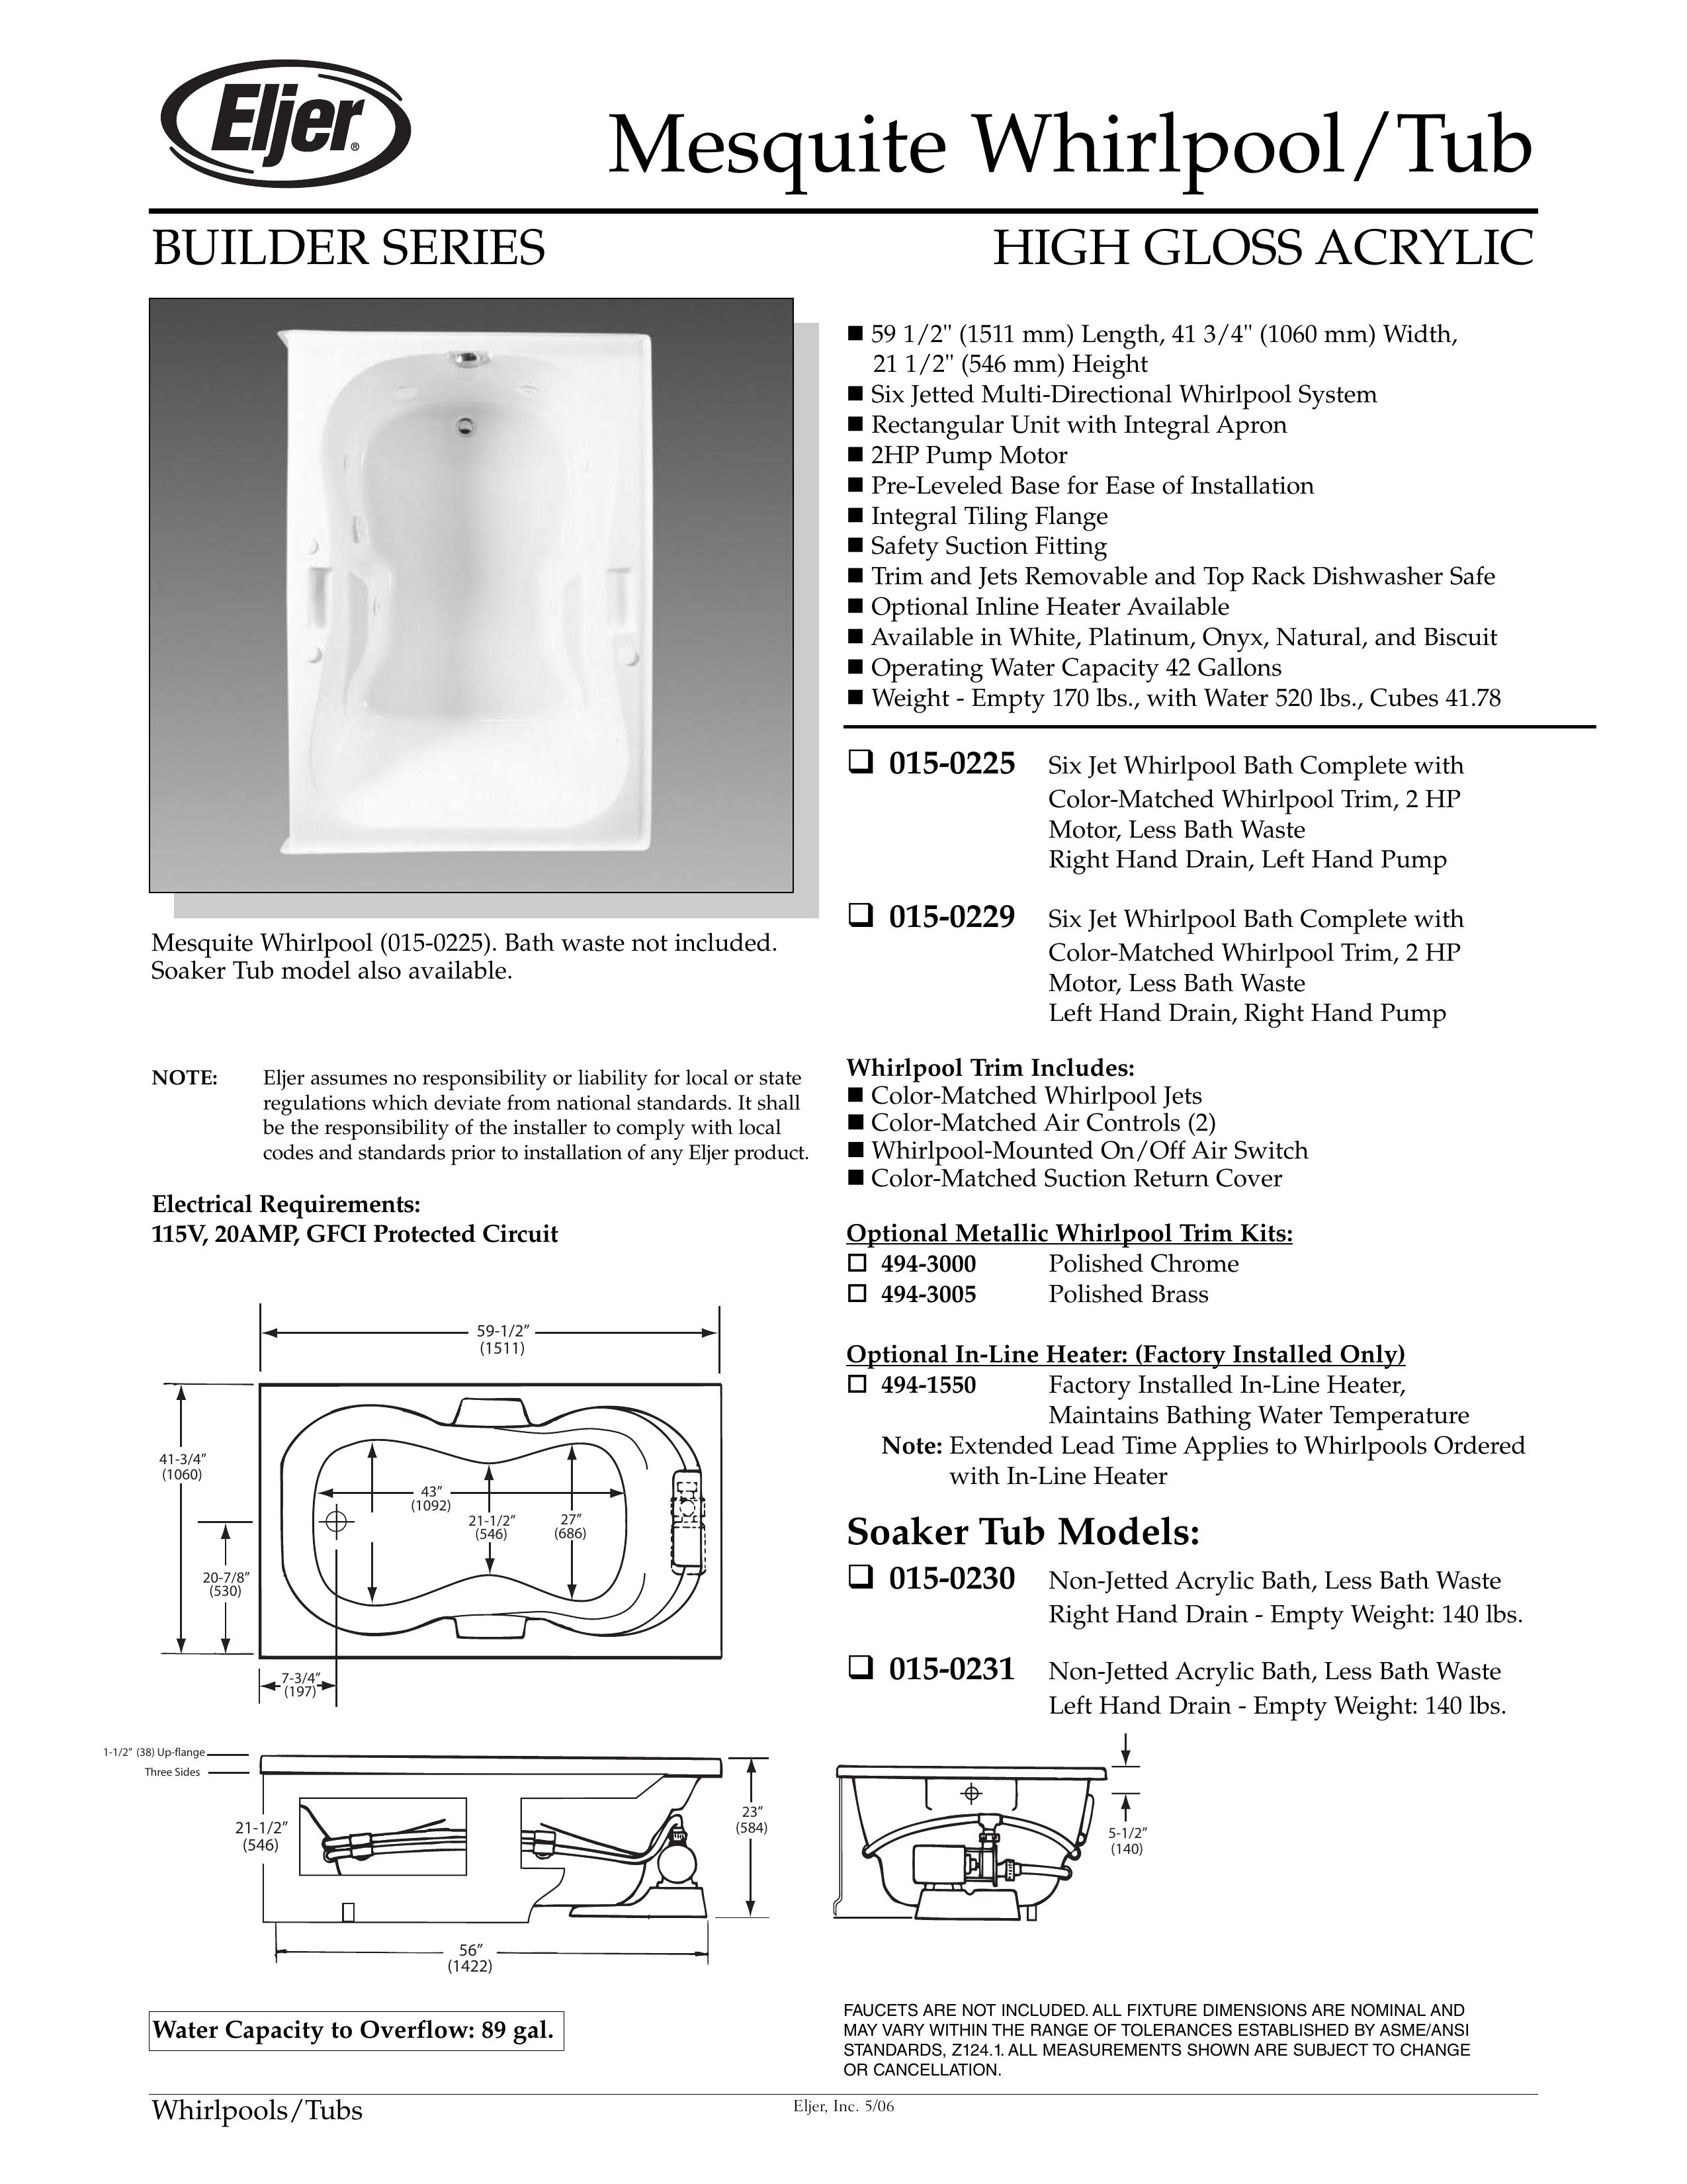 American Standard 015-0229 Hot Tub User Manual